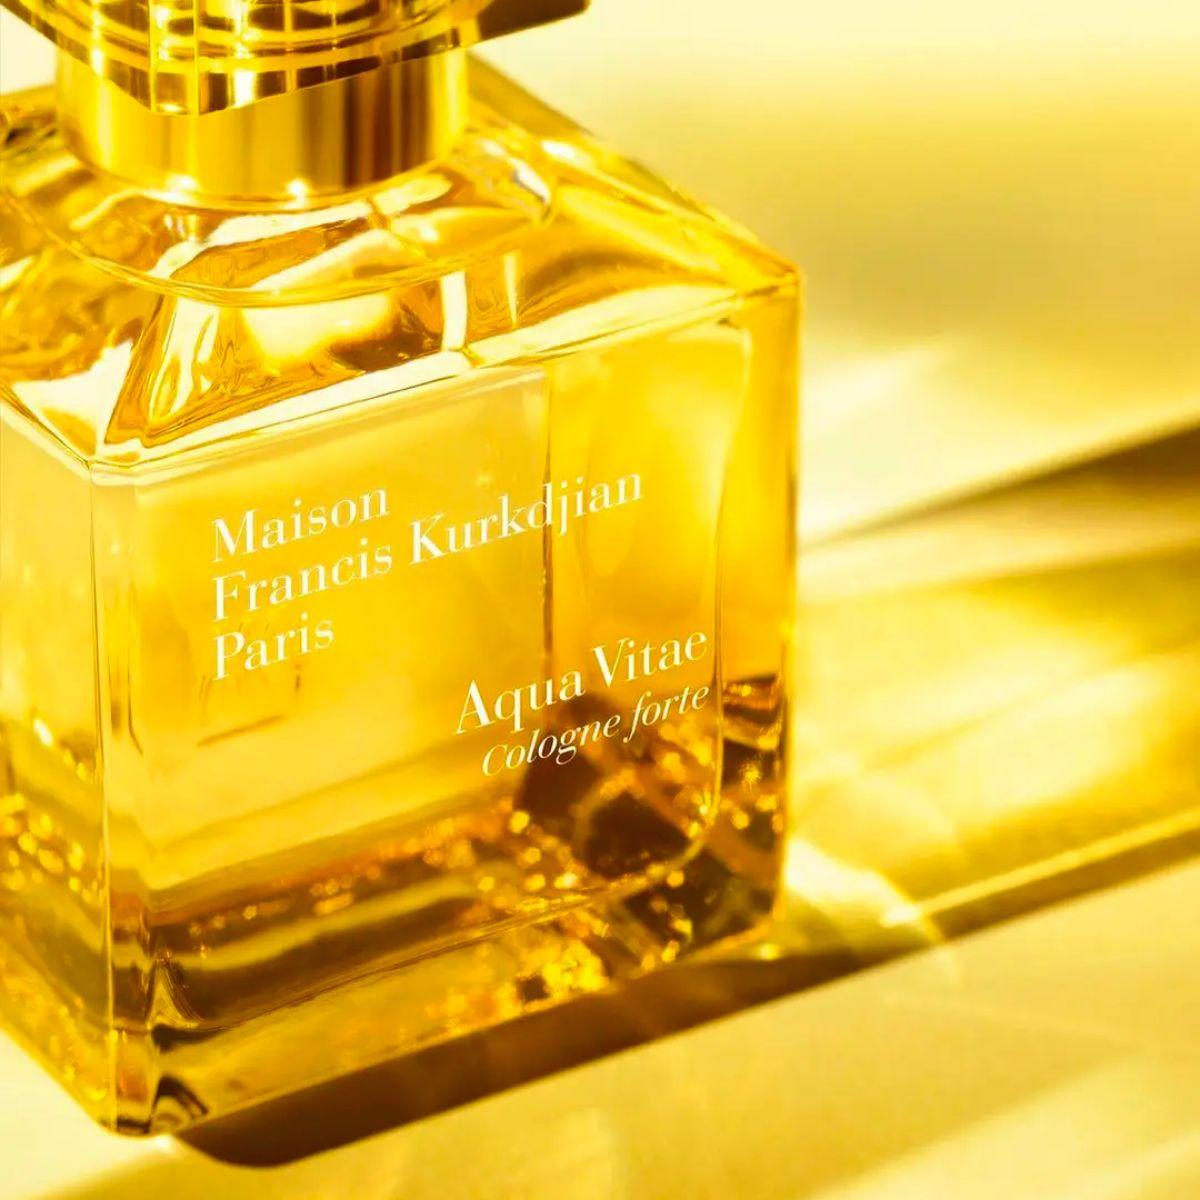 Image of the perfume Aqua Vitae Cologne Forte by the brand Maison Francis Kurkdjian